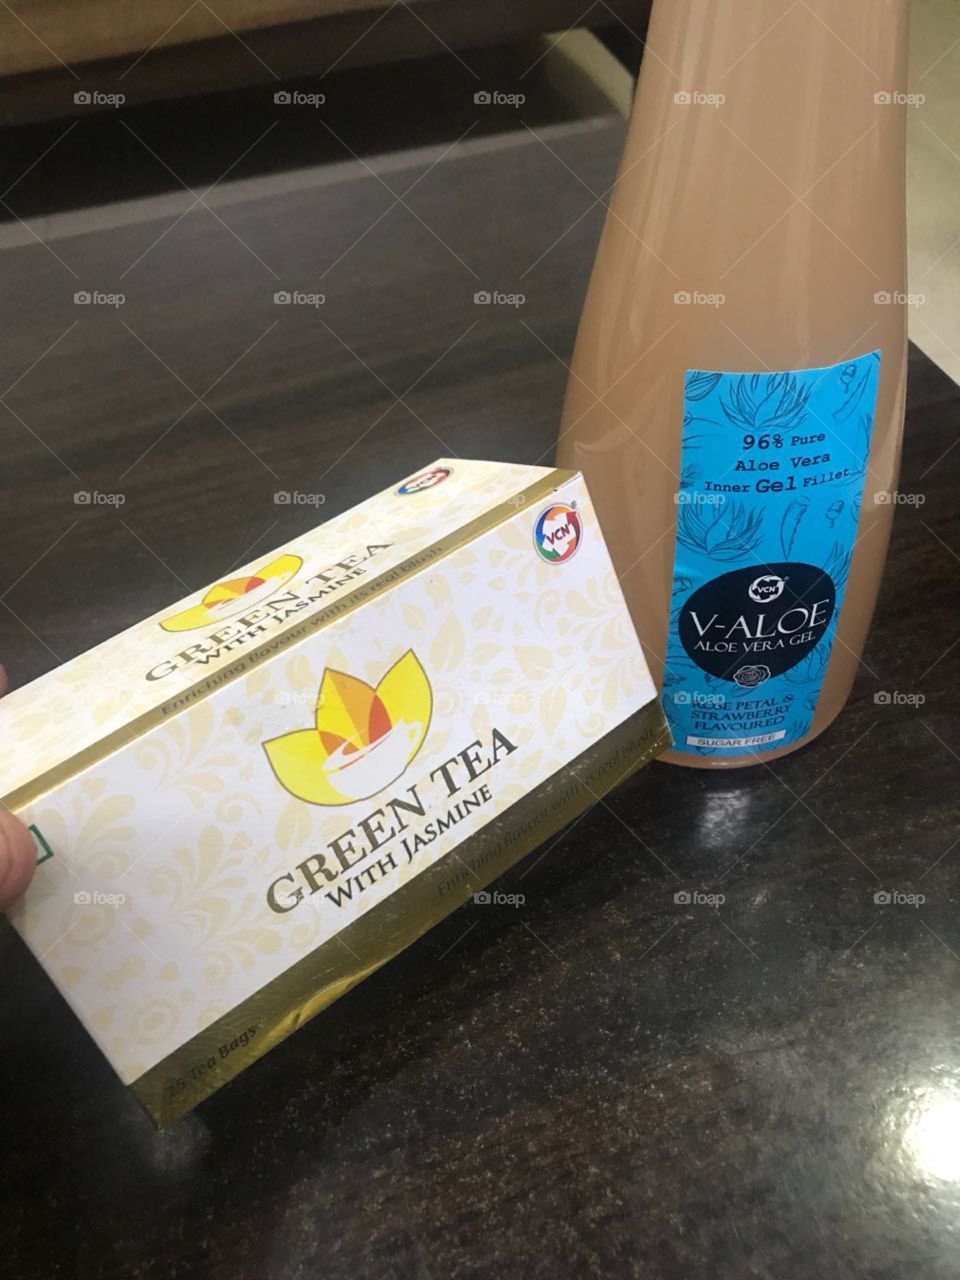 Tea and alovira